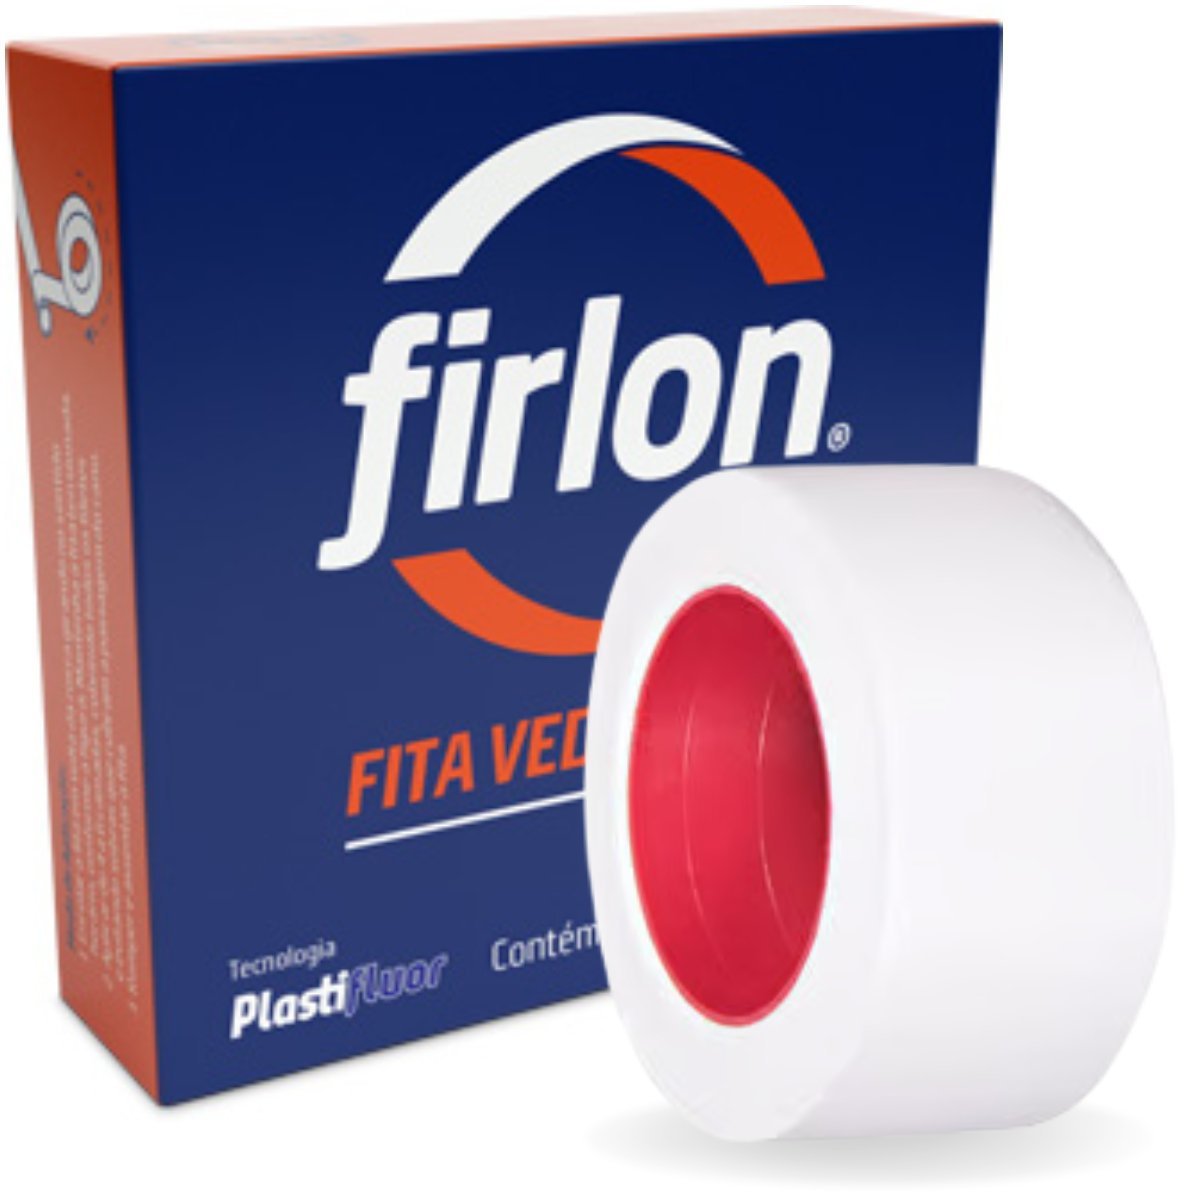 Fita Veda Rosca Teflon 12mm x 10m | Firlon - 1